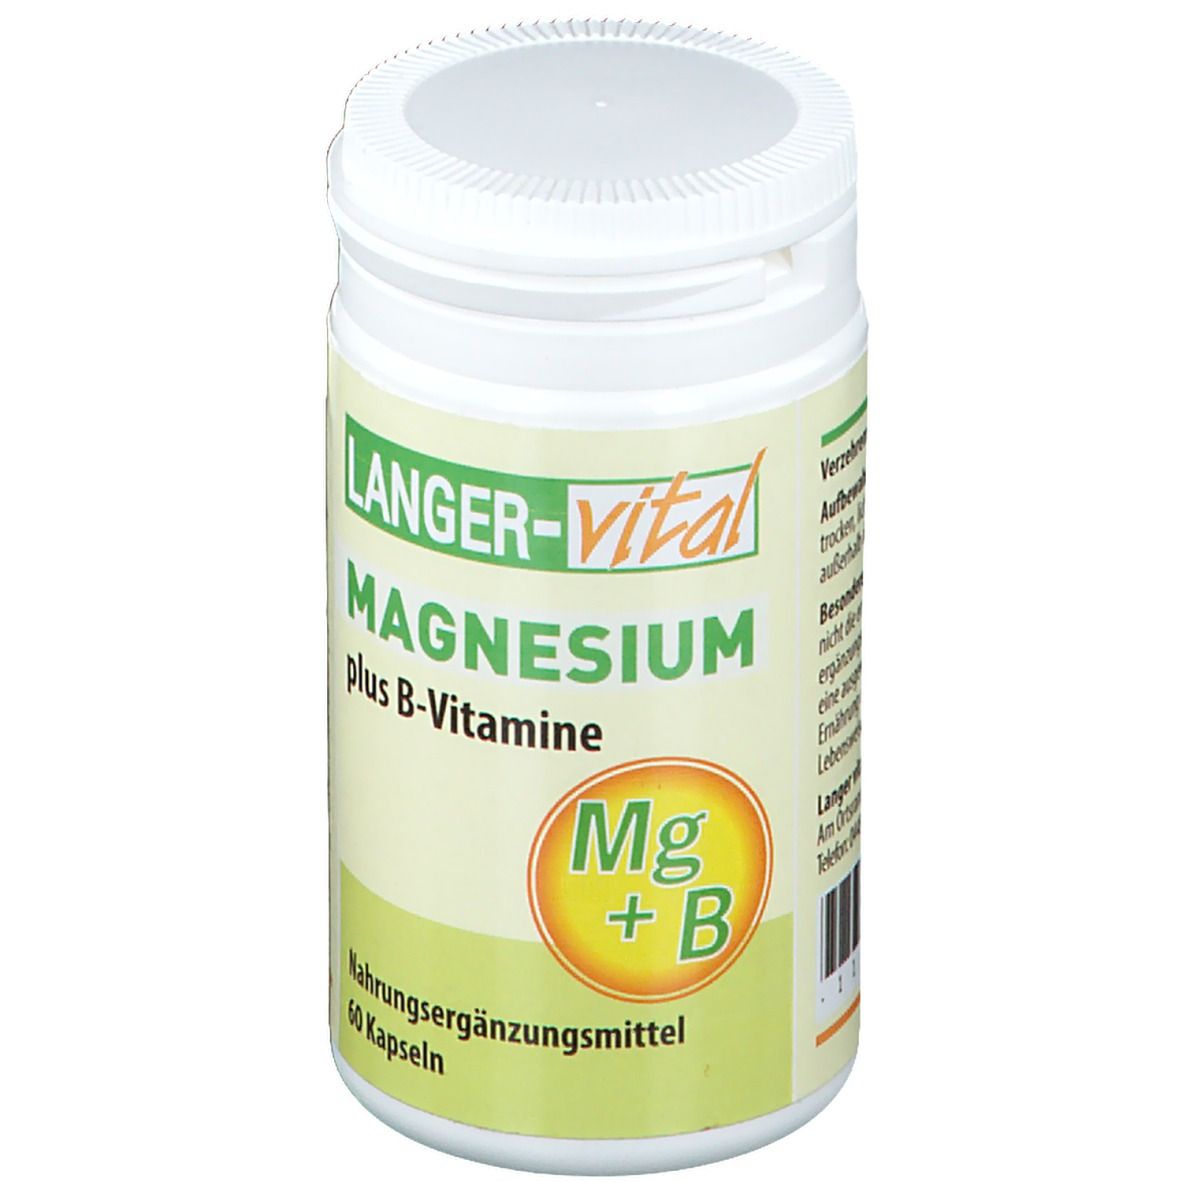 Magnesium pls B-Vitamine